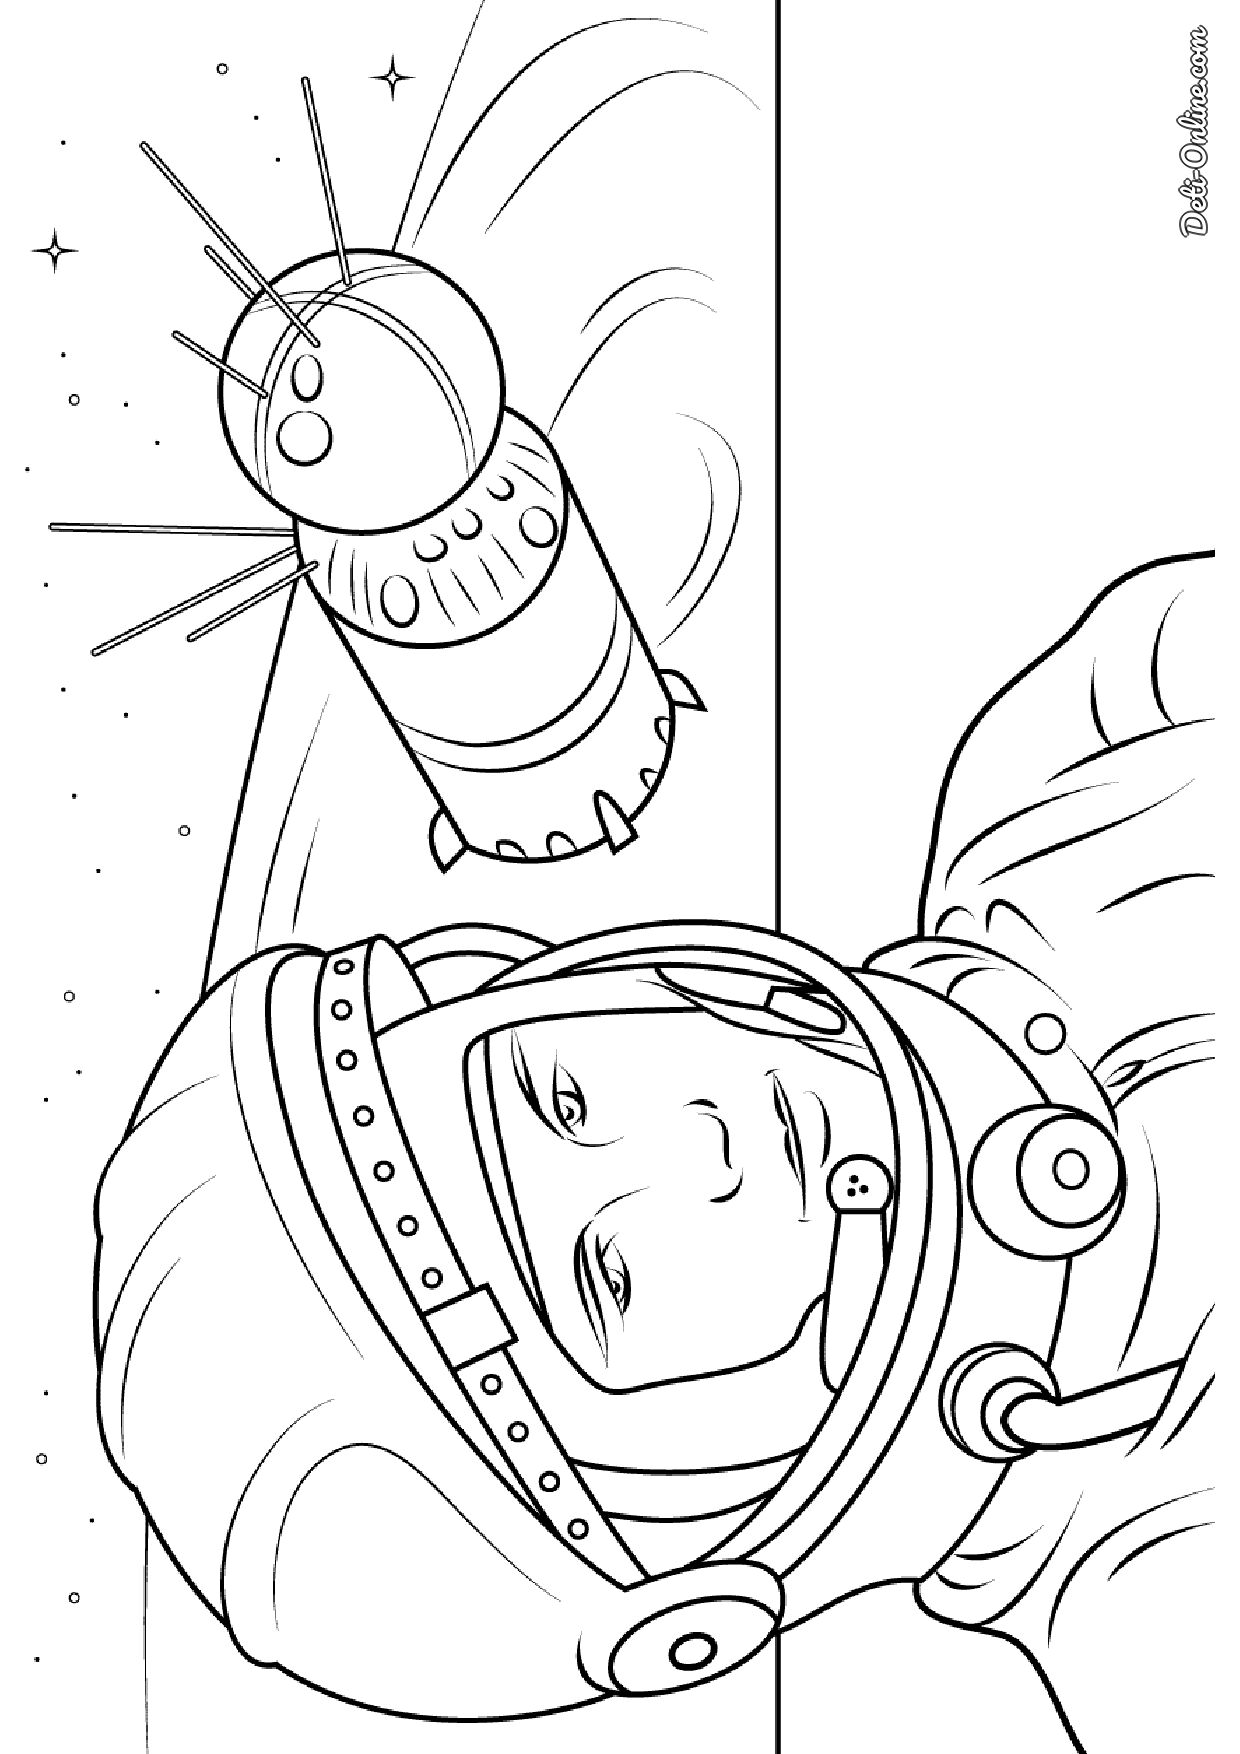 Рисунок на день космонавтики раскраска. Космонавтика раскраски для детей. Раскраска. В космосе. Раскраска для малышей. Космос. Раскраски ко Дню космонавтики.